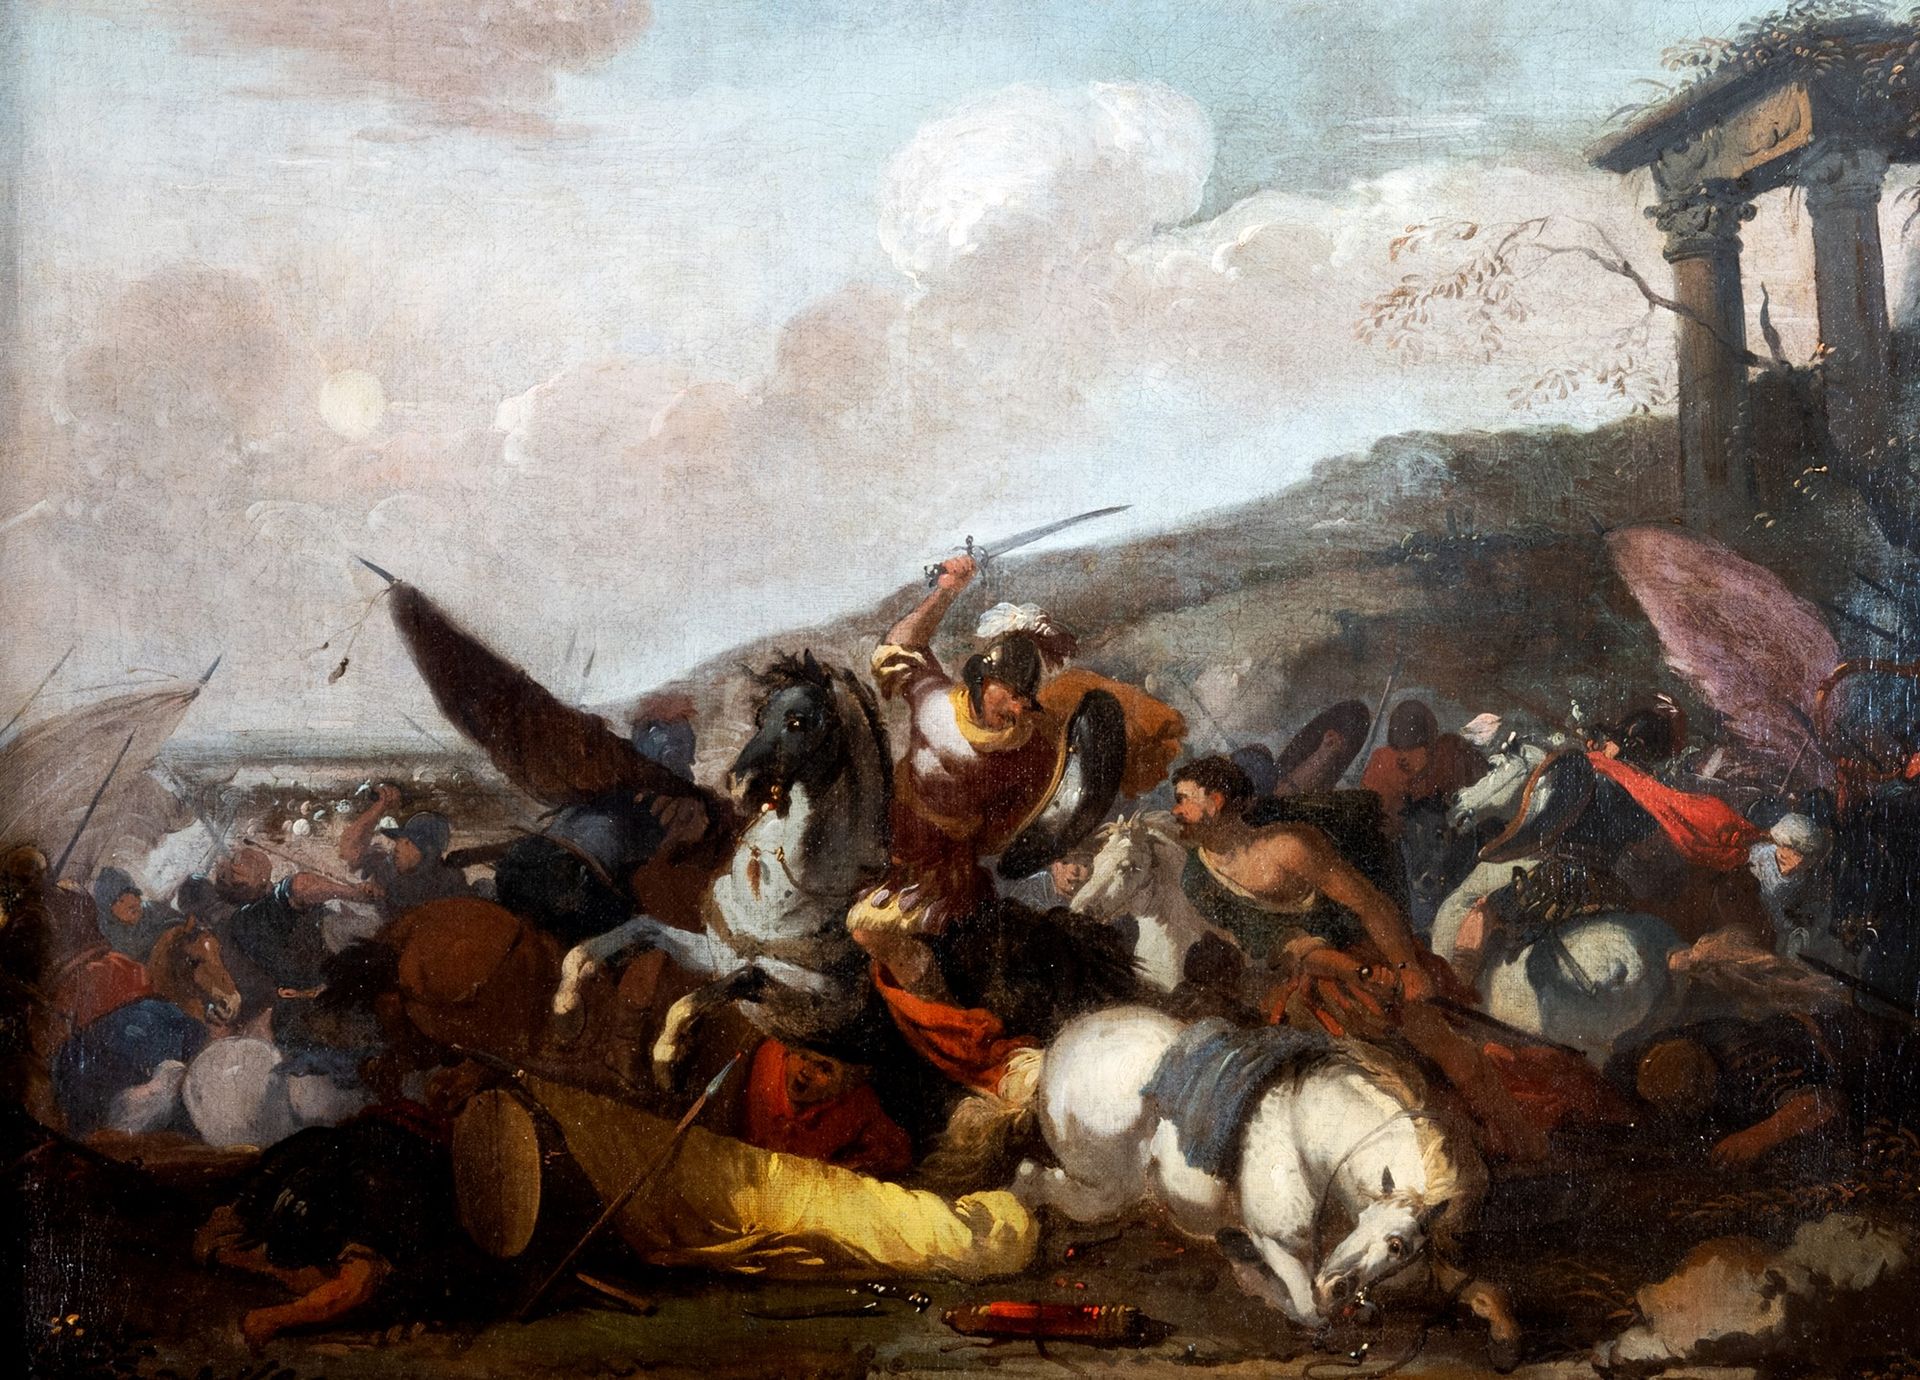 Scuola italiana, secolo XVII Battle scene

oil on canvas
47.5 x 64.5 cm